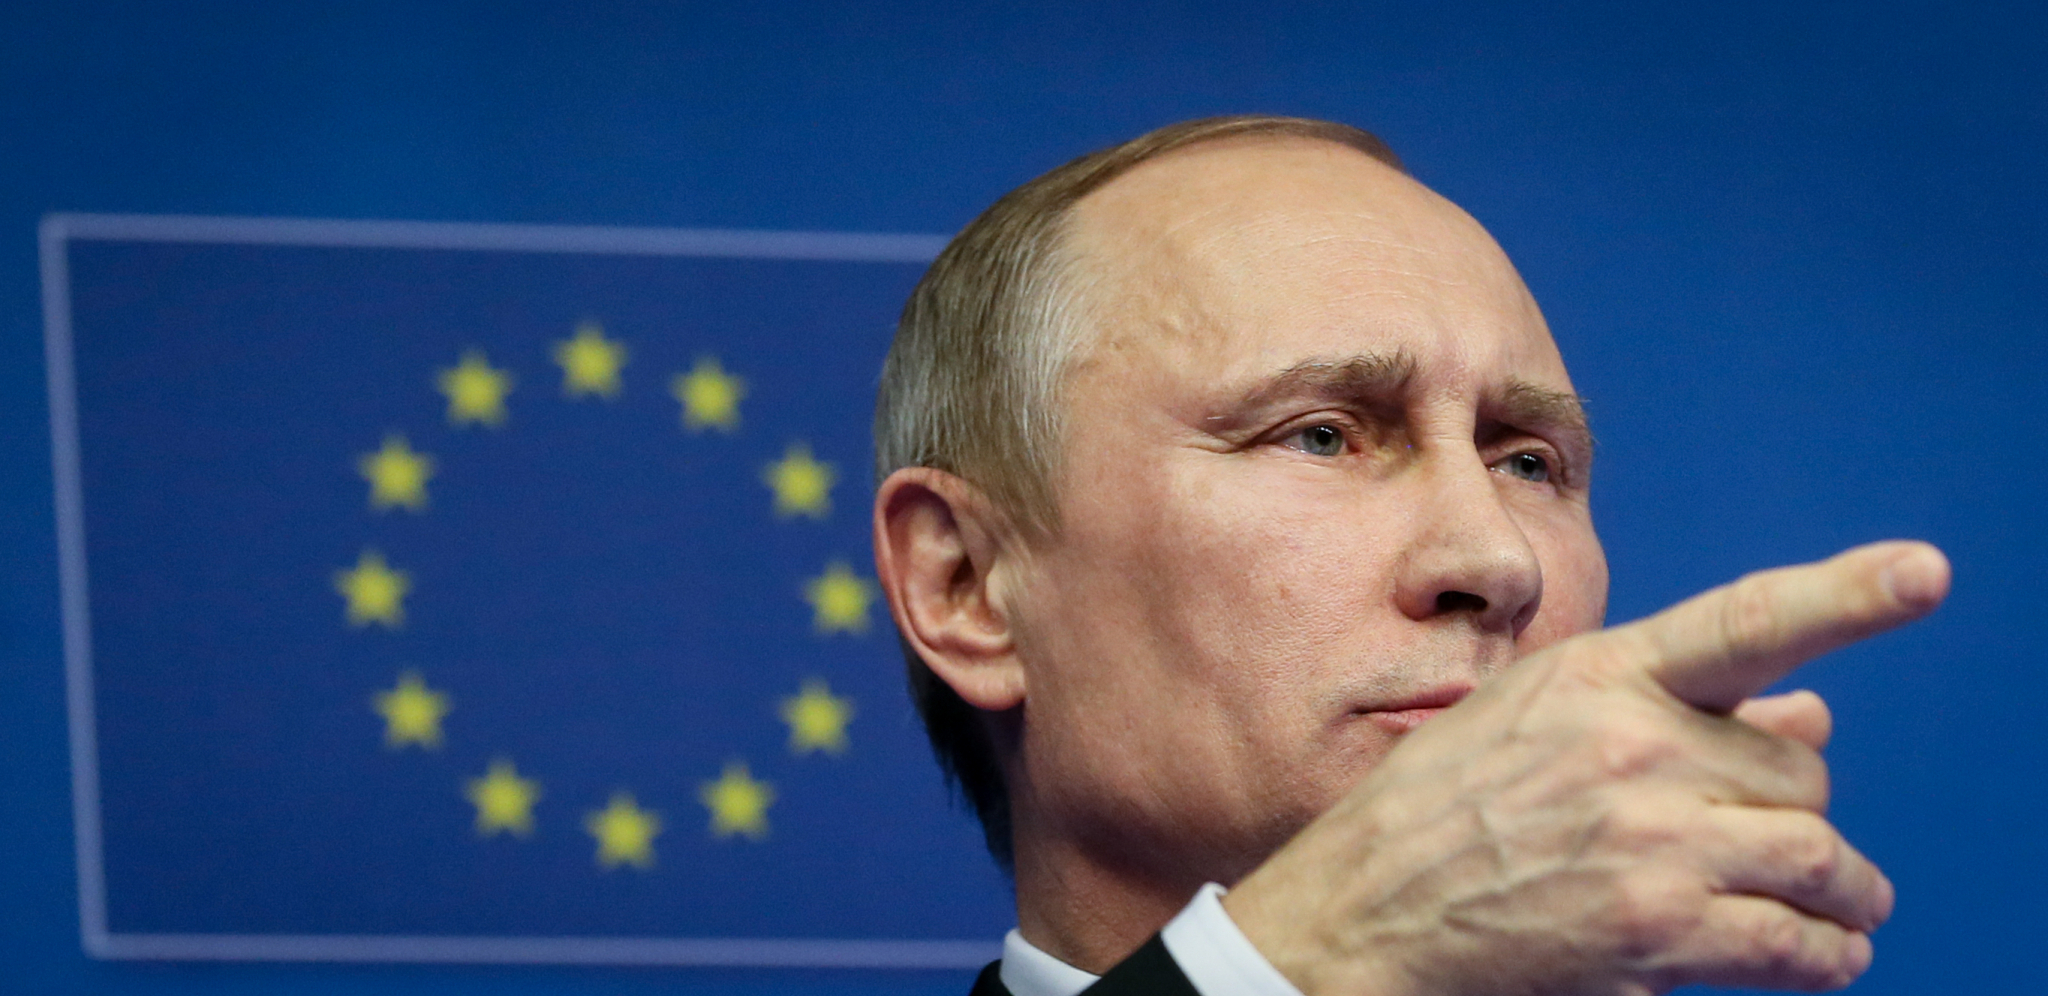 Zašto Putinu odgovara zamrzavanje odnosa: Logičan "kec u rukavu"